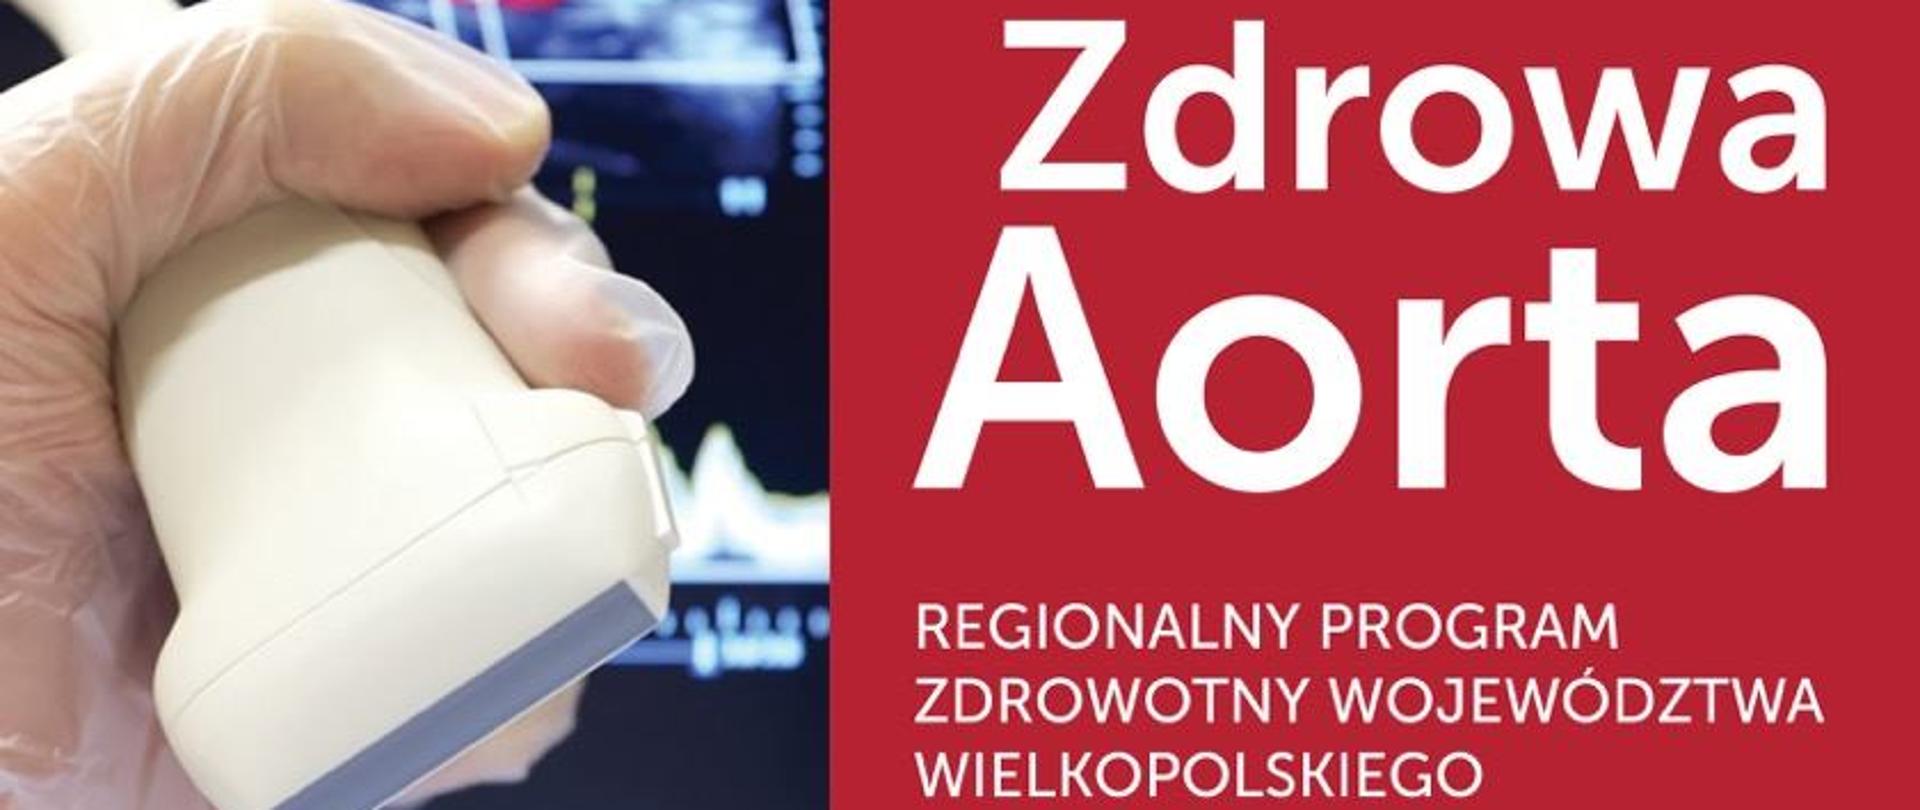 Bezpłatne badanie USG aorty brzusznej z Wielkopolskiego Programu ZDROWA AORTA